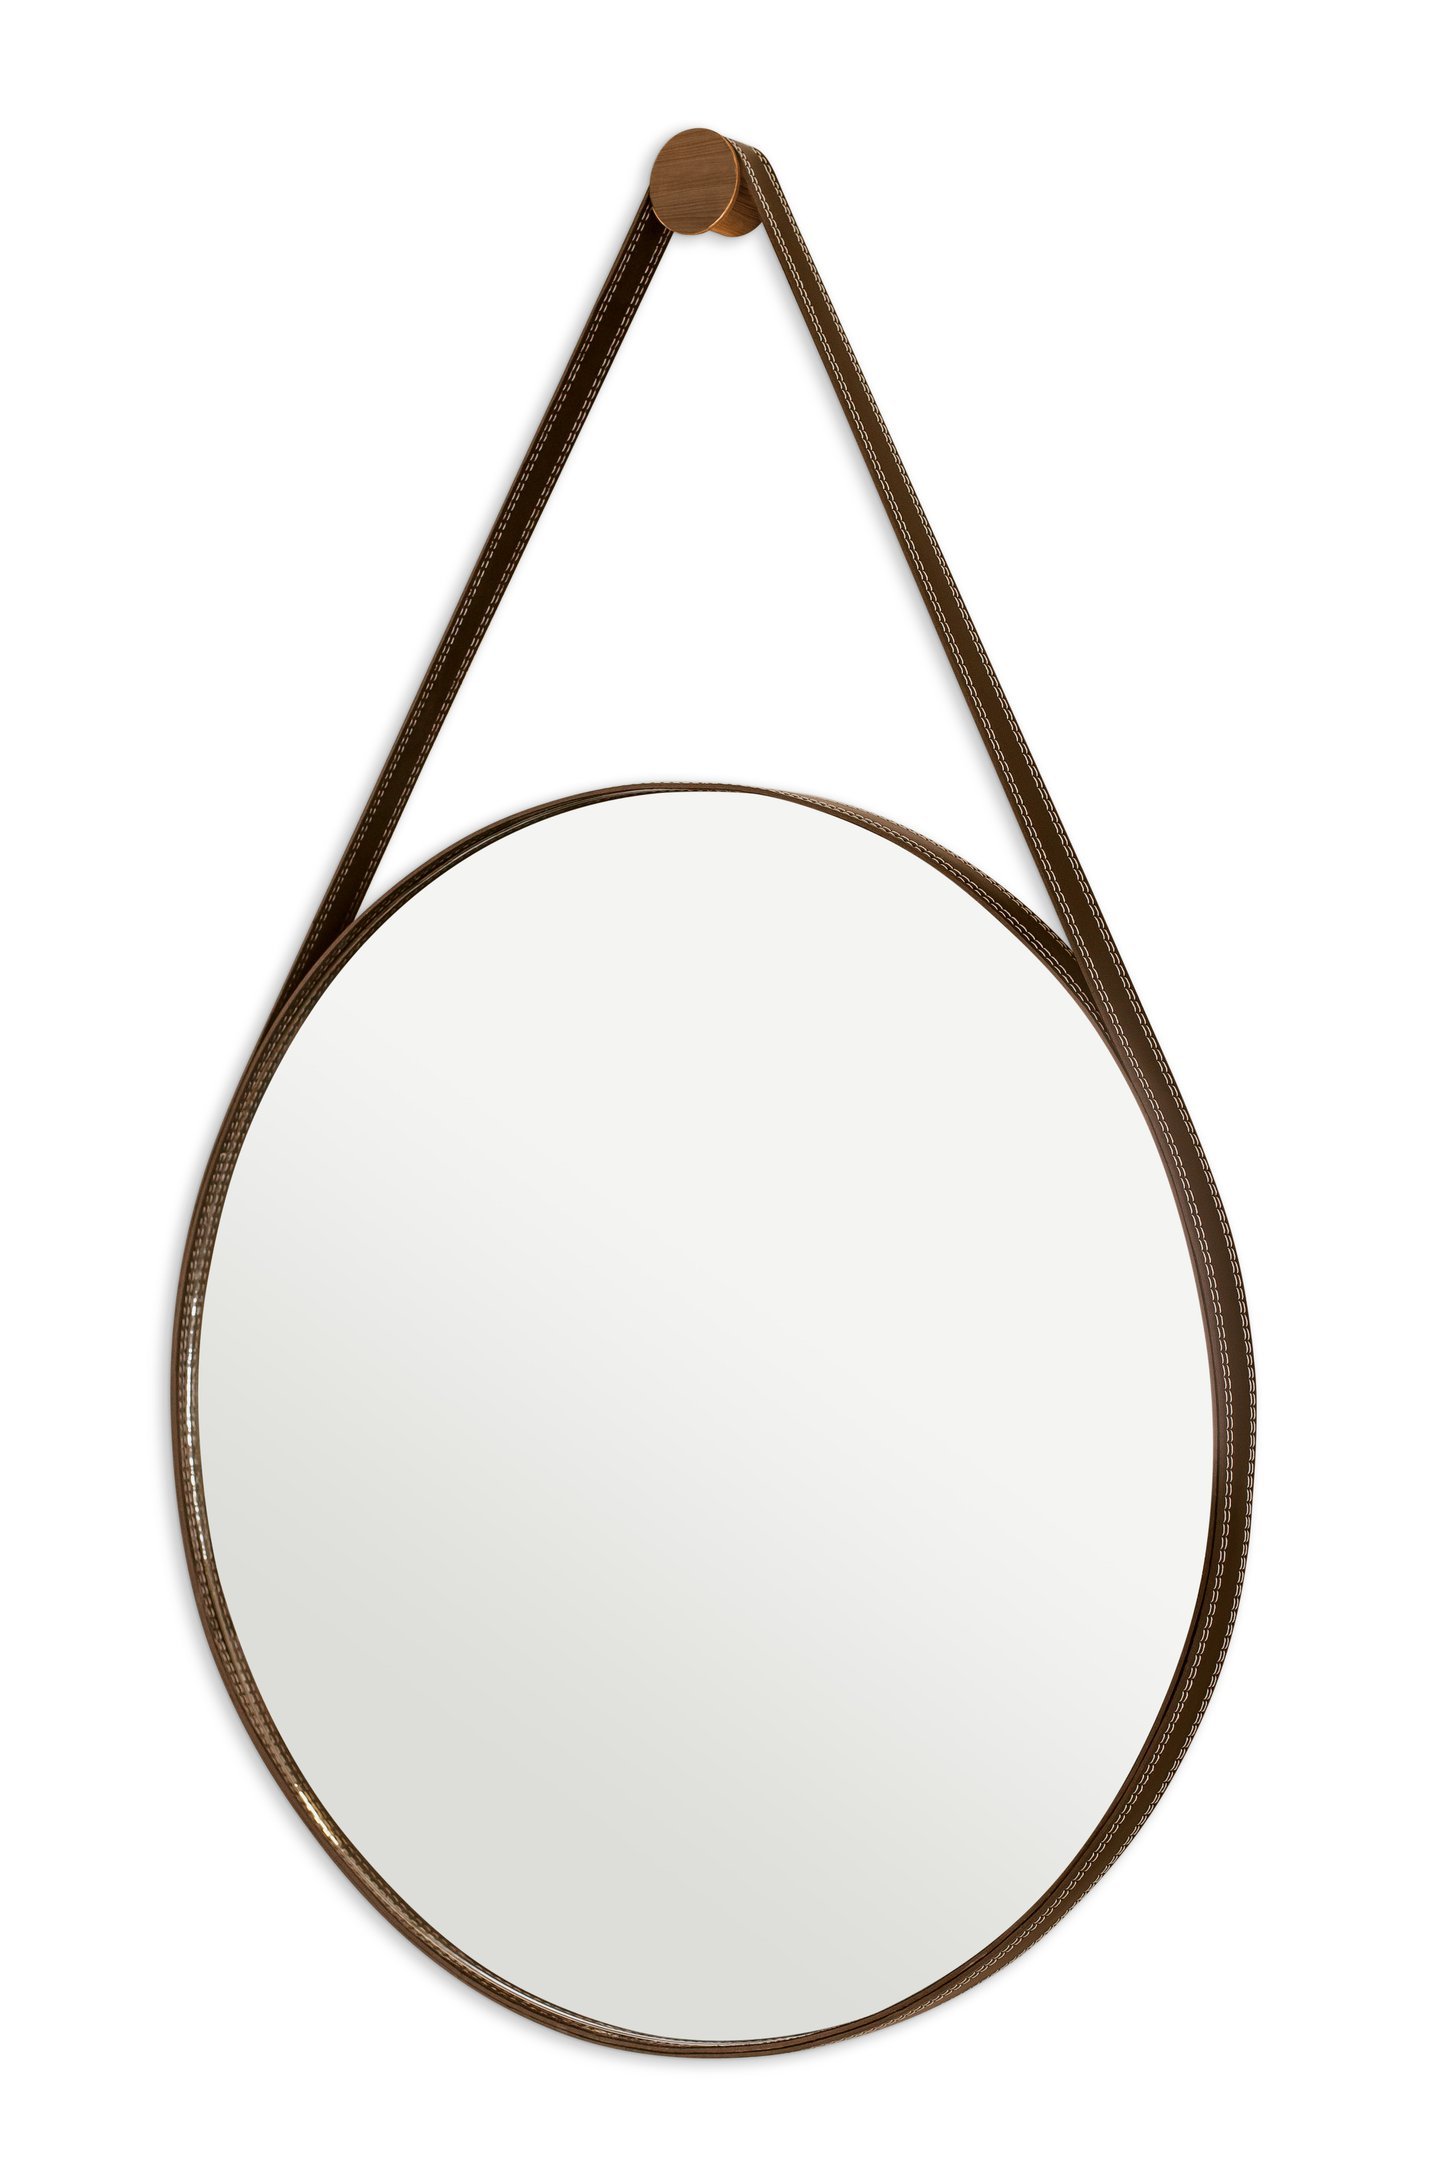 Espelho Adnet Para Lavabo Organico Redondo 60cm + Suporte:Café - 1